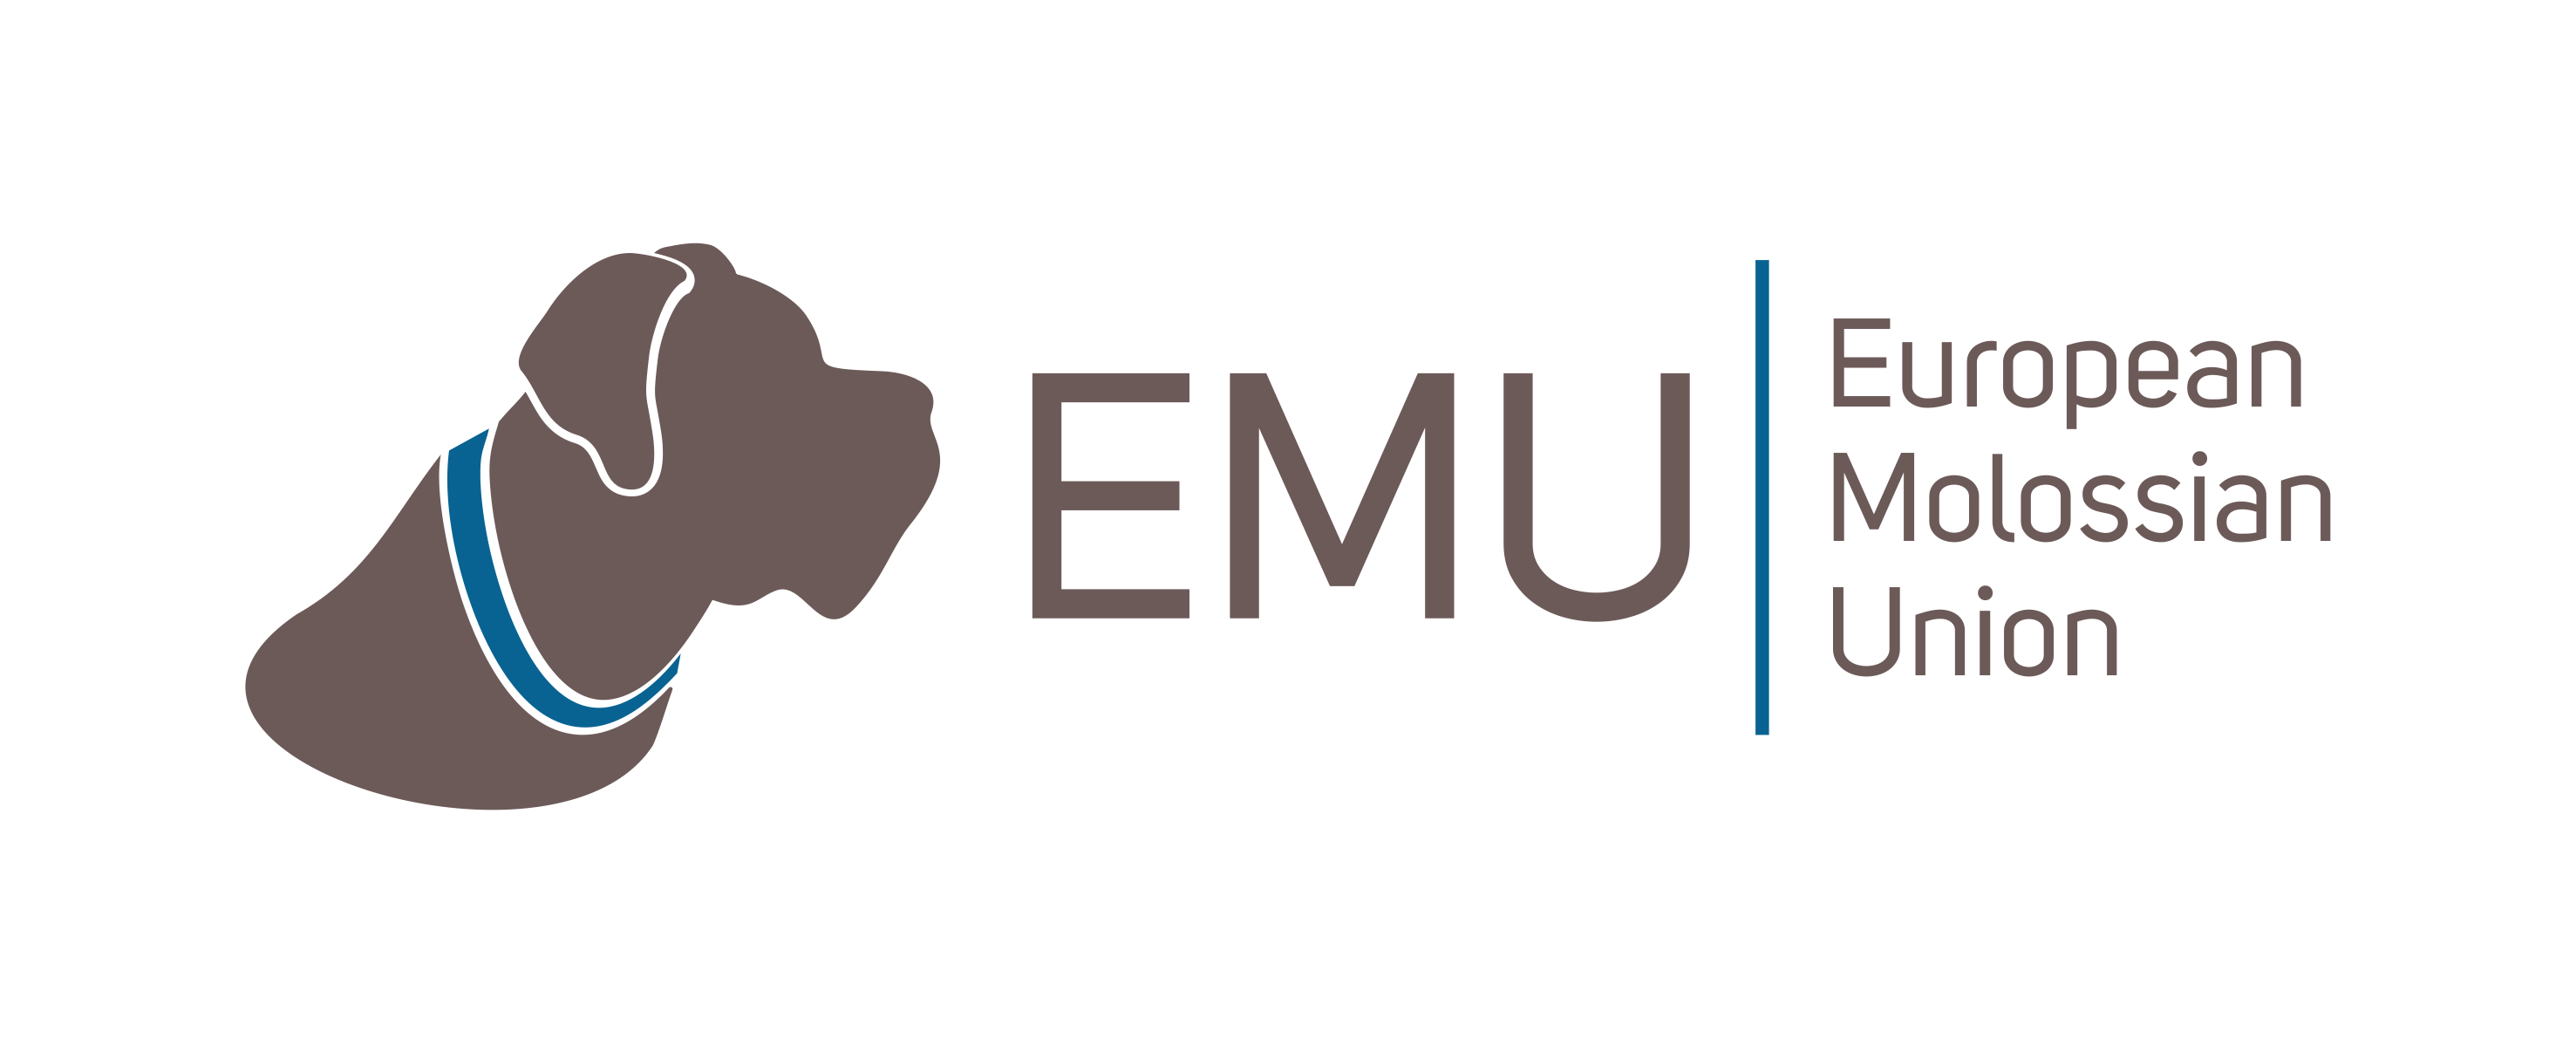 EMU e.V., die European Molossian Union, engagiert sich leidenschaftlich für die Gesundheit und Reinheit der Molosser-Rassen in Europa, indem sie Züchter und Halter unterstützt, qualitativ hochwertige Pflege fördert und die genetische Vielfalt schützt.